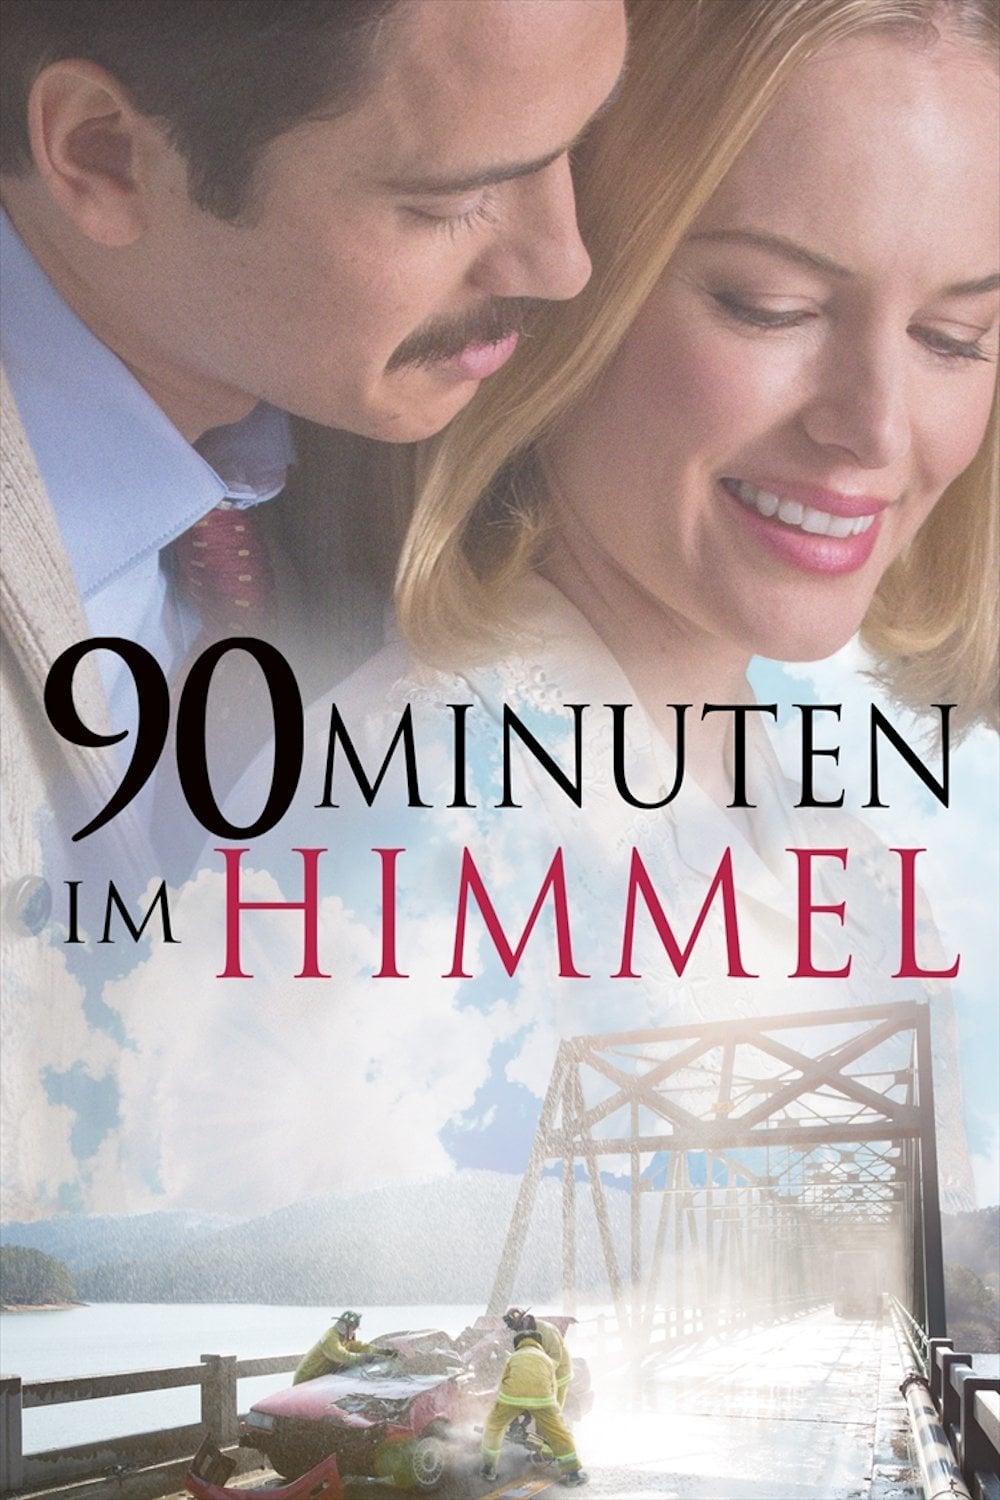 Plakat von "90 Minuten im Himmel"